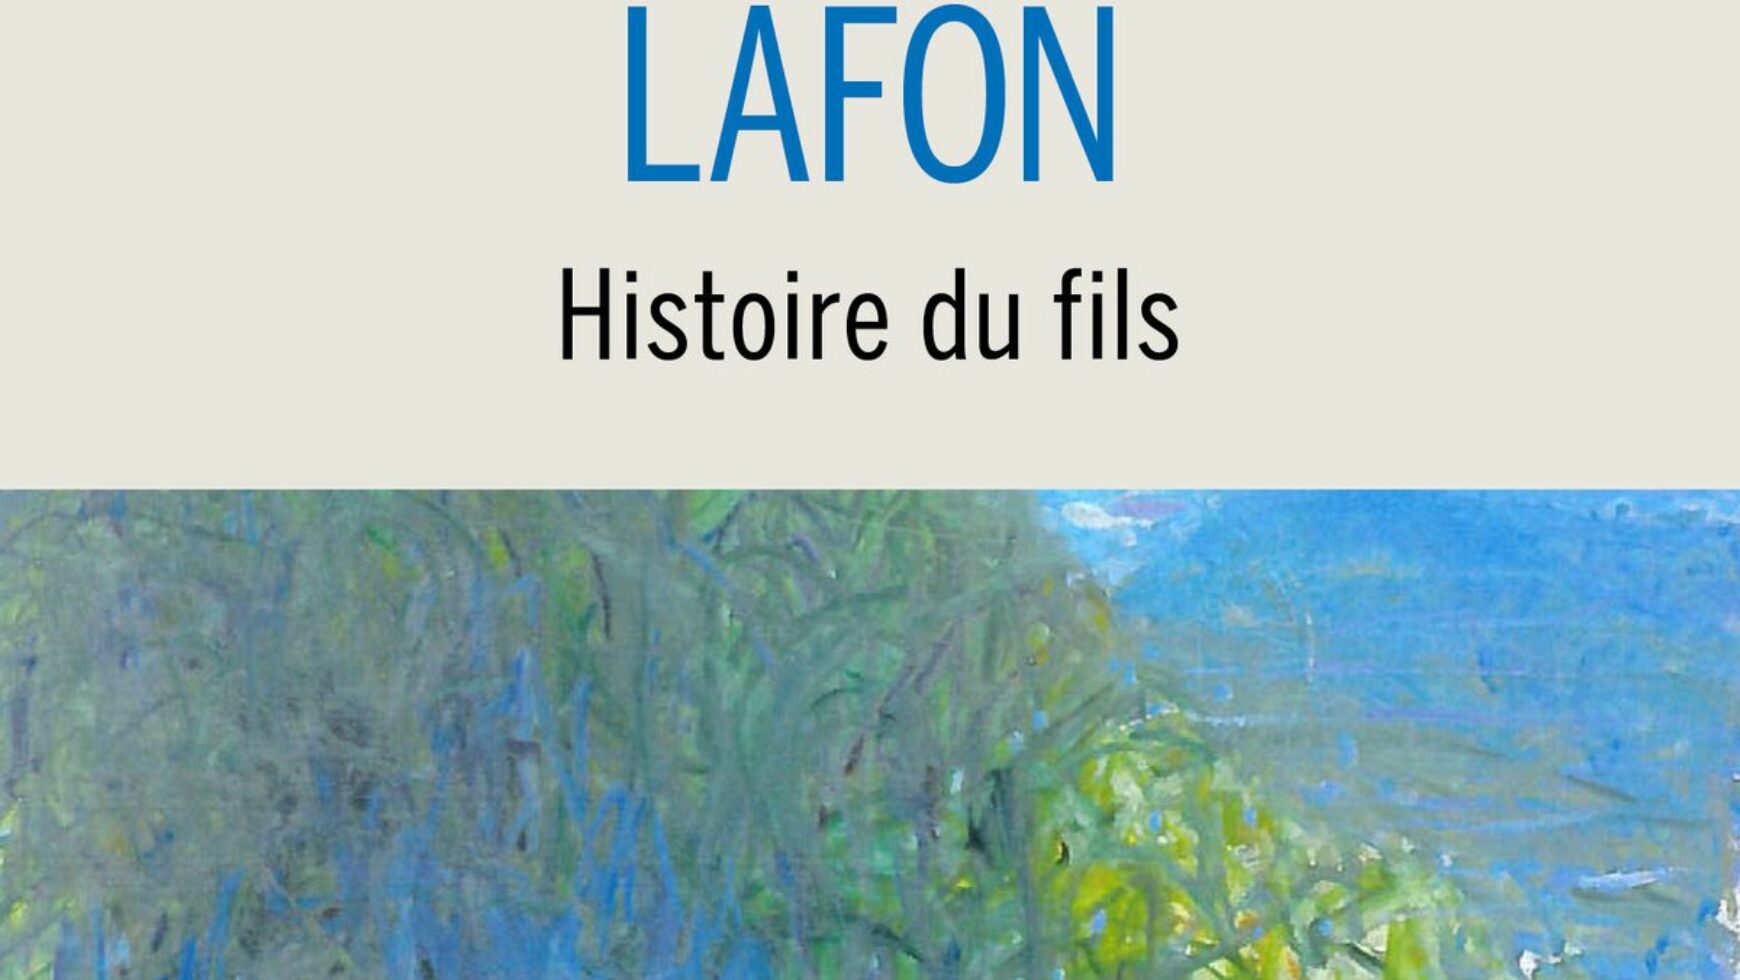 Prix Renaudot pour notre amie Marie-Hélène LAFON « Histoire du fils »